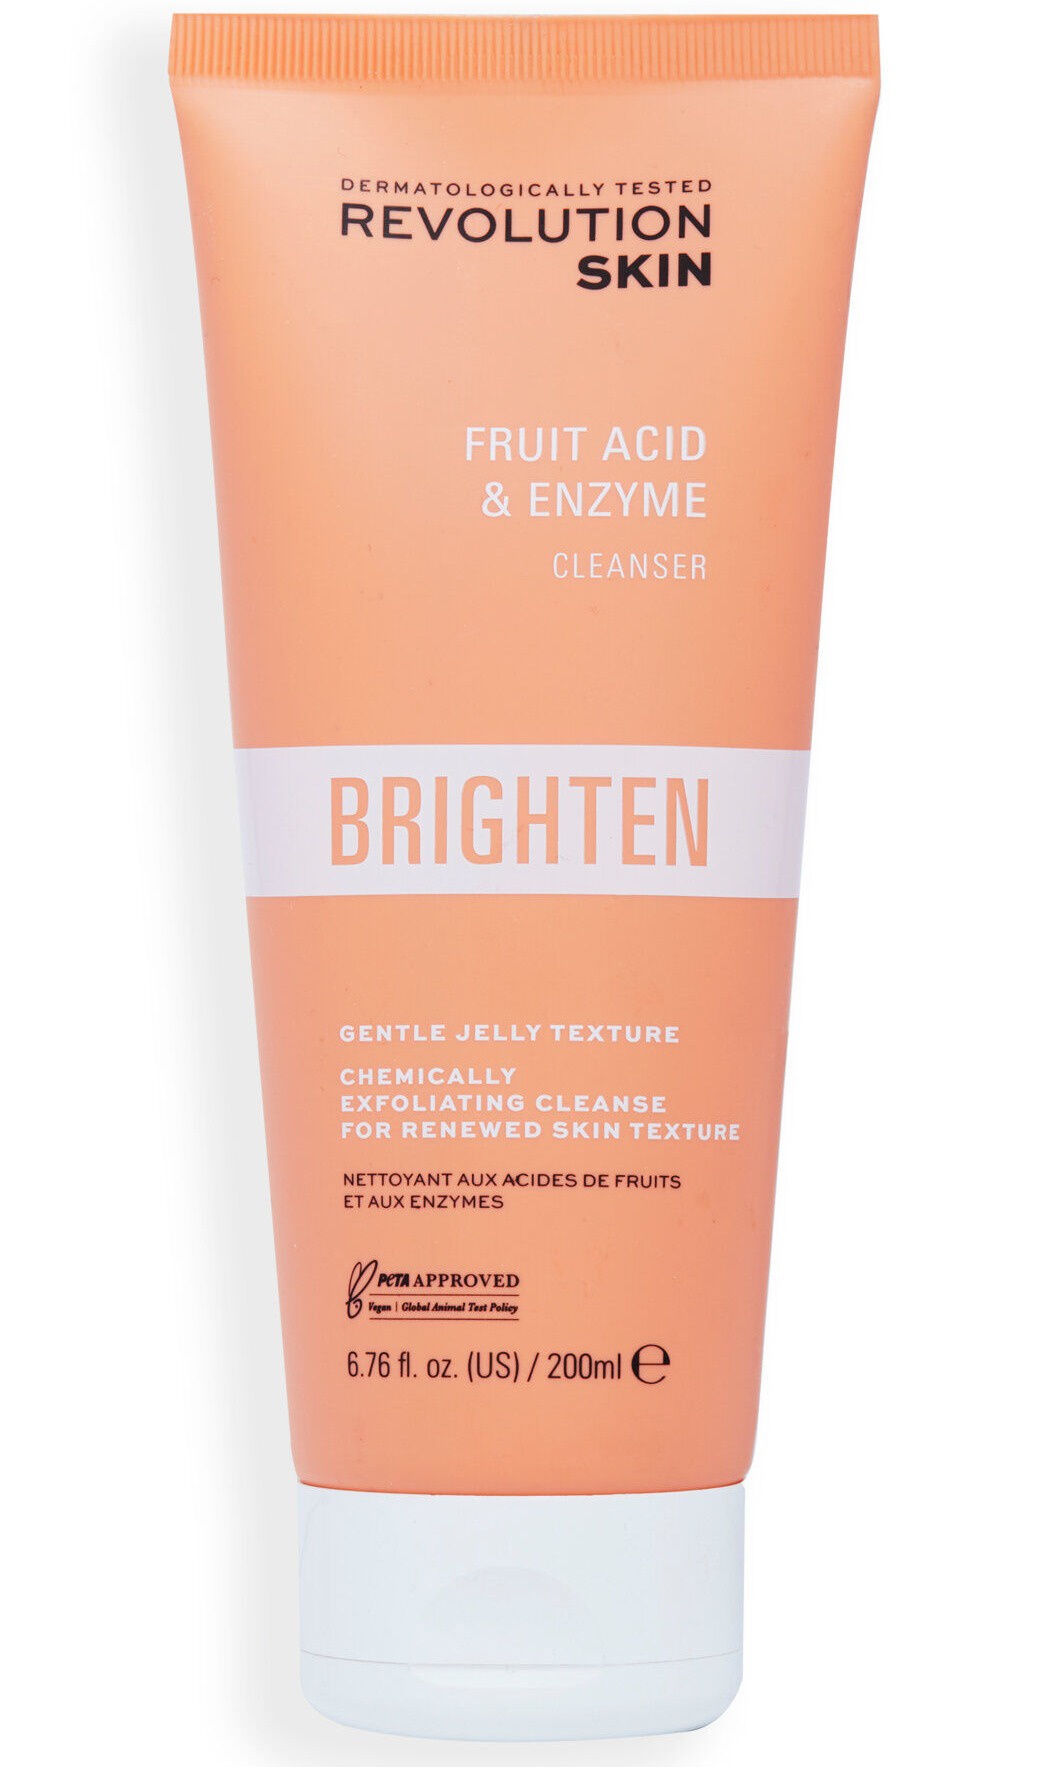 Revolution Skincare Brighten Fruit Acid & Enzyme Cleanser